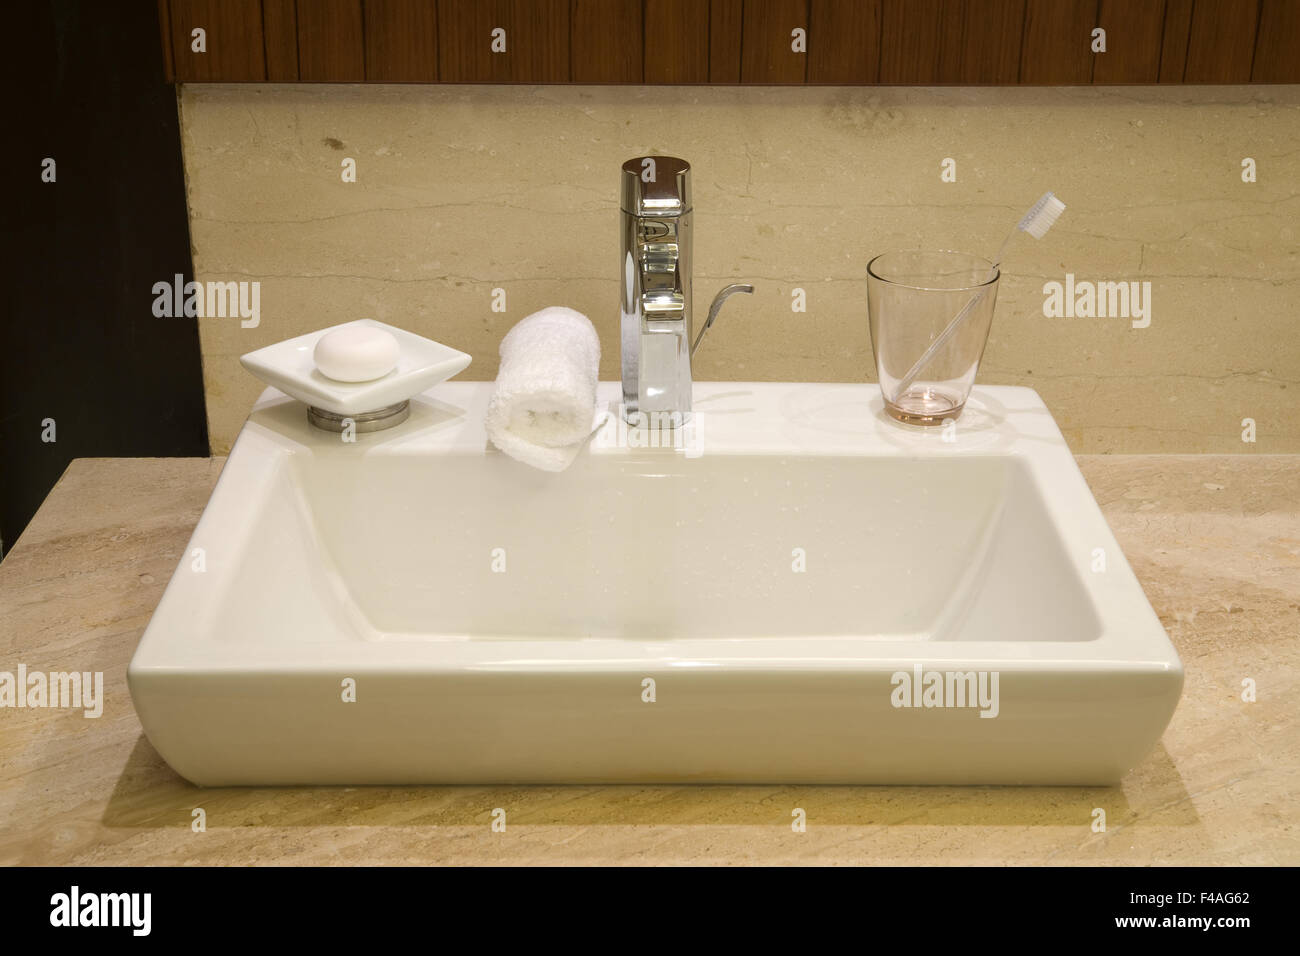 Luxury hotel bathroom Stock Photo